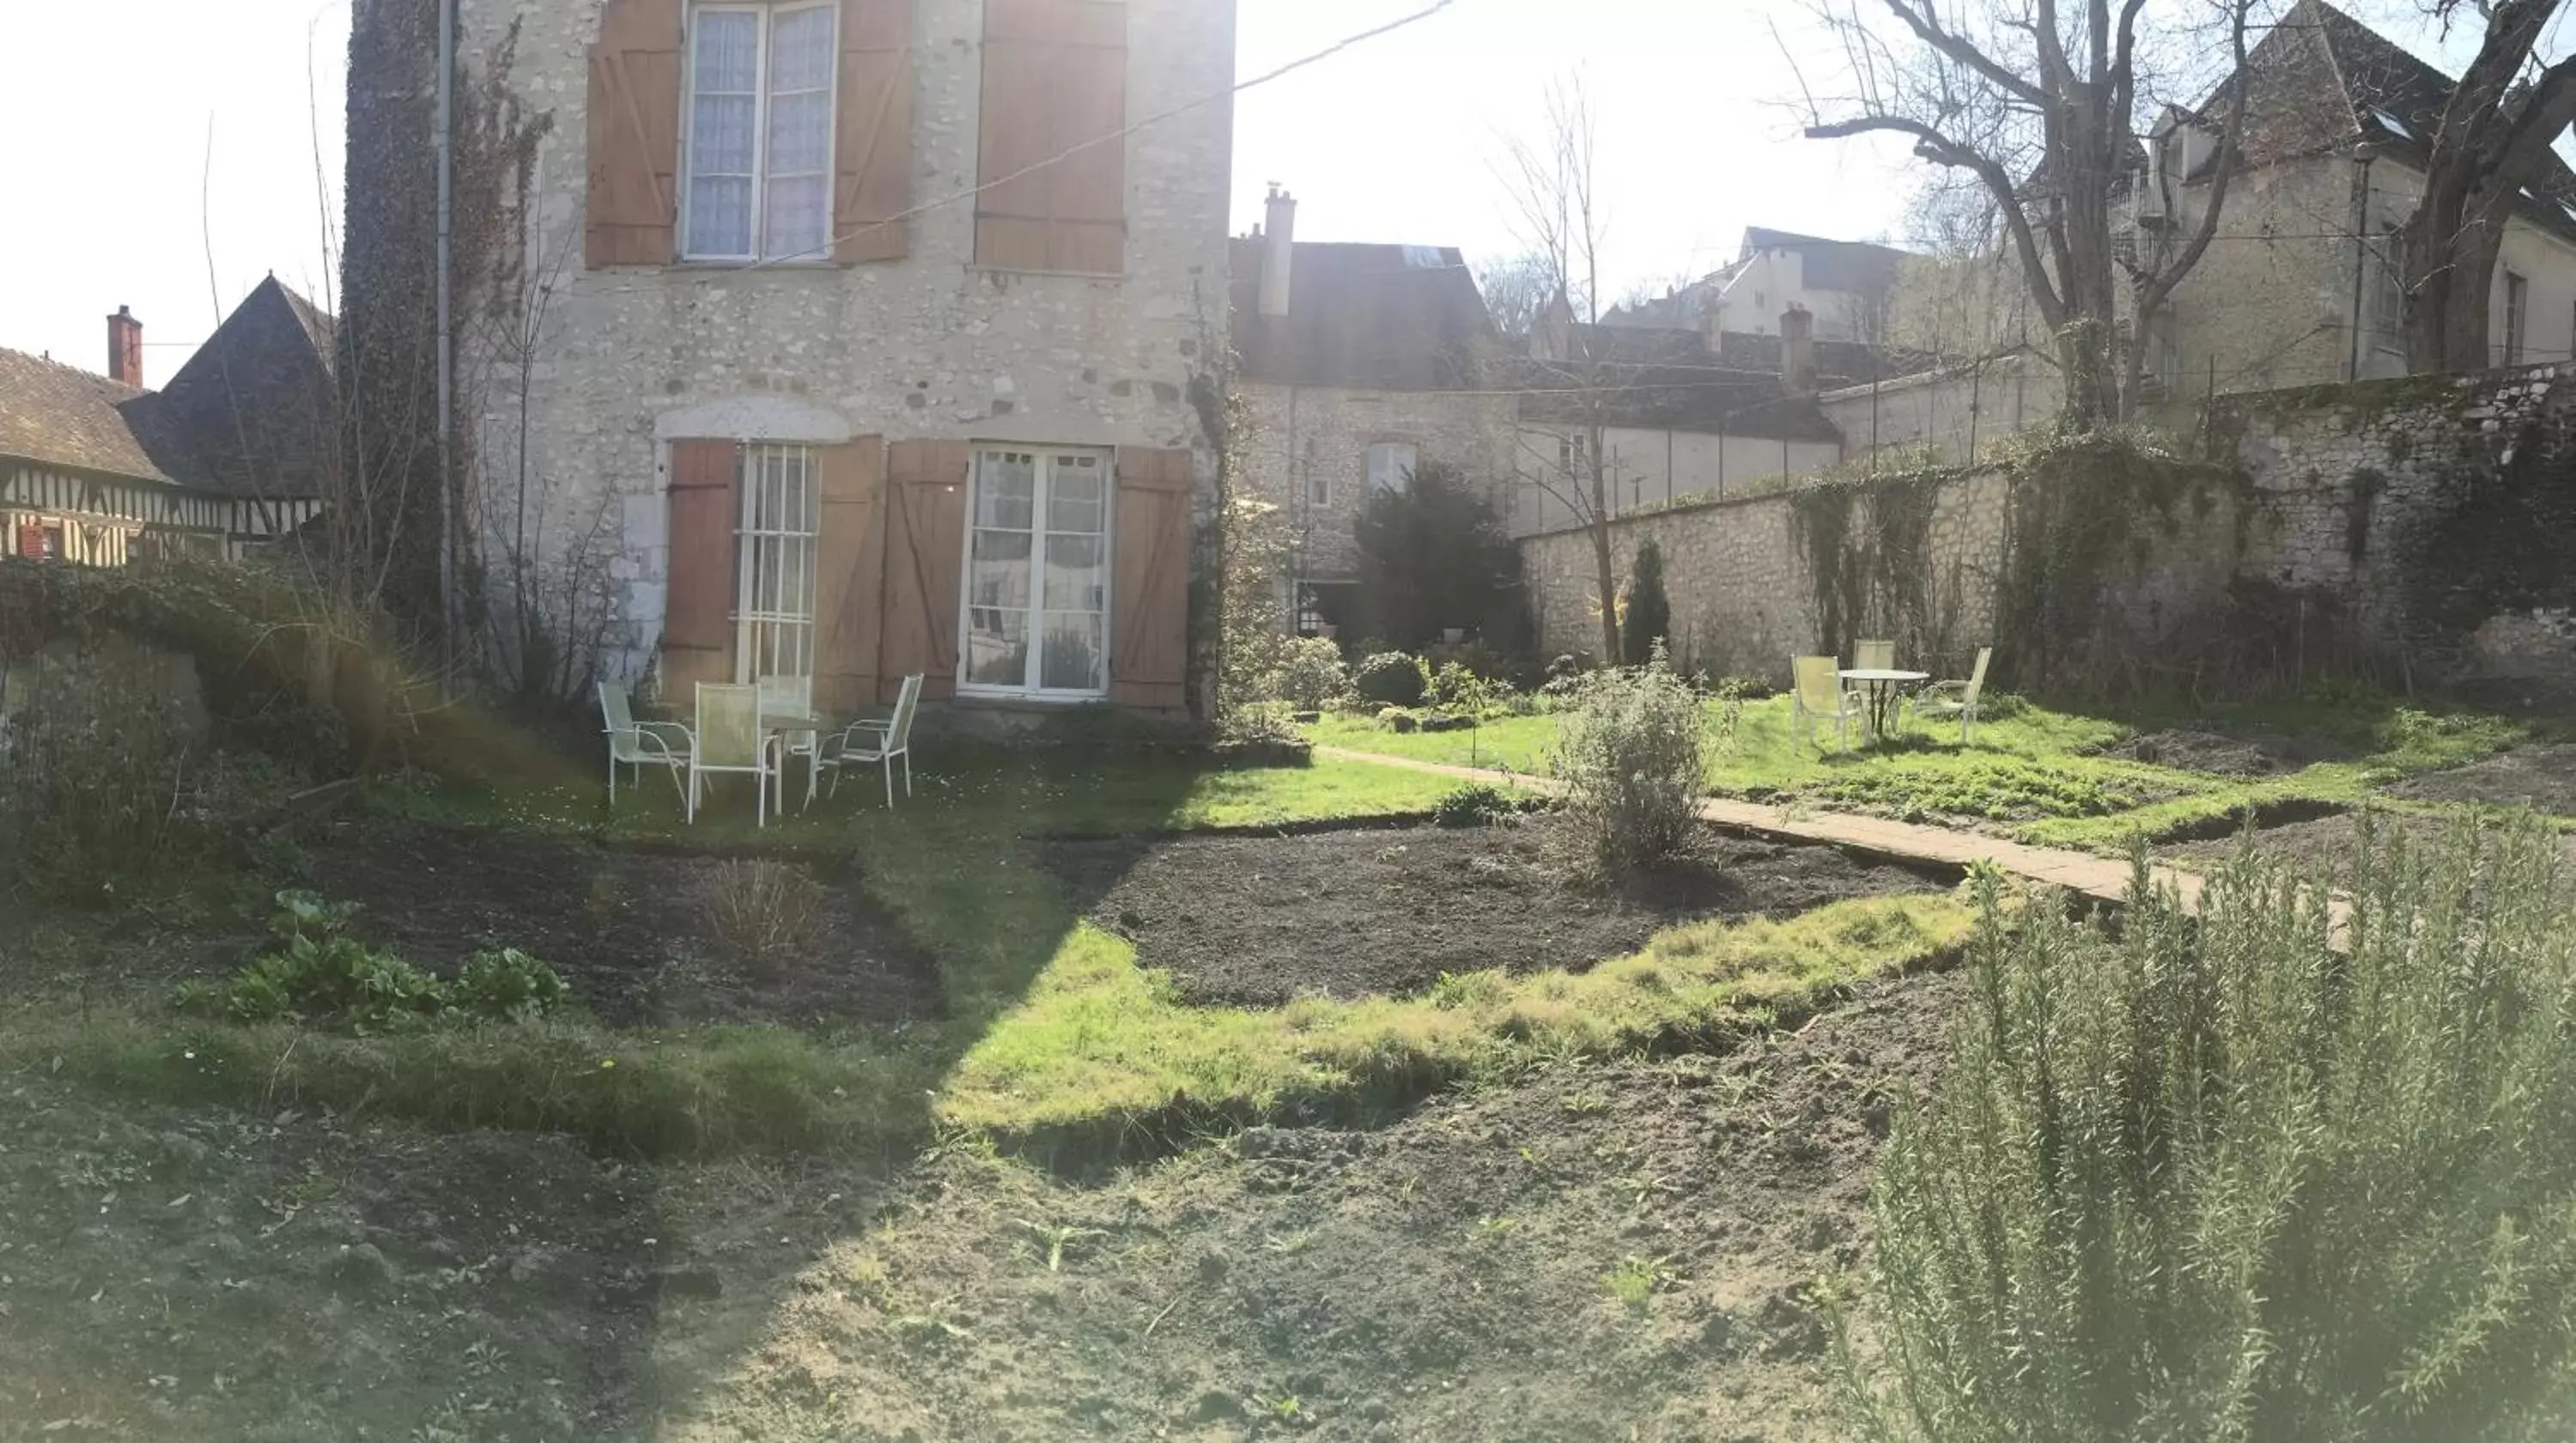 Garden view, Property Building in Demeure des Vieux Bains